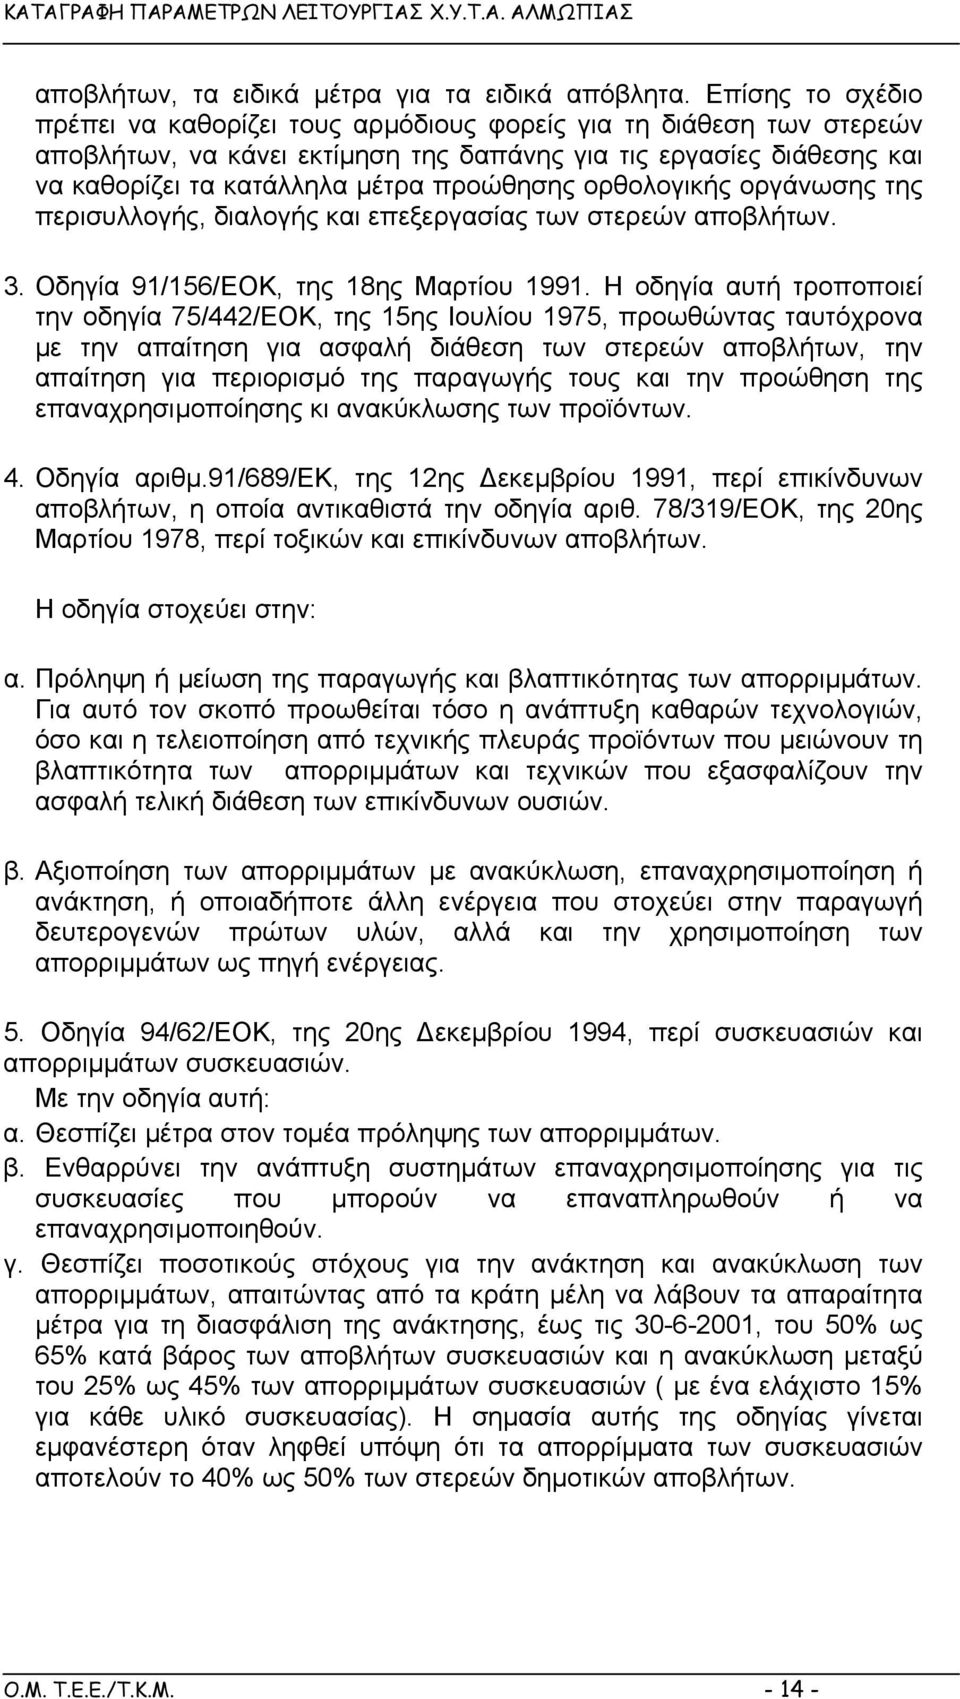 ορθολογικής οργάνωσης της περισυλλογής, διαλογής και επεξεργασίας των στερεών αποβλήτων. 3. Οδηγία 91/156/ΕΟΚ, της 18ης Μαρτίου 1991.